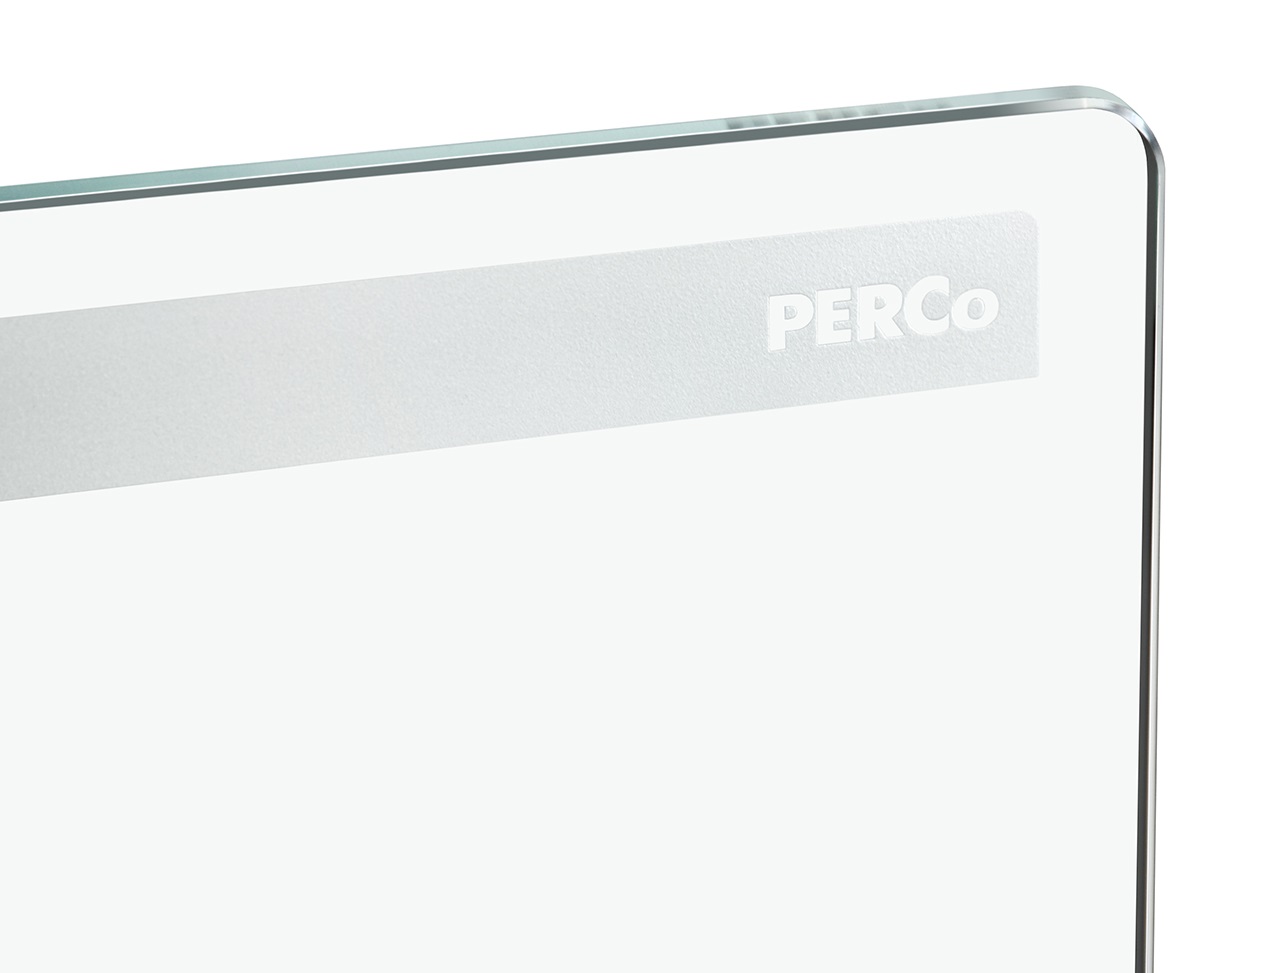 Створка длиной 650 мм для стойки калитки PERCo-WMD-06, закаленное стекло